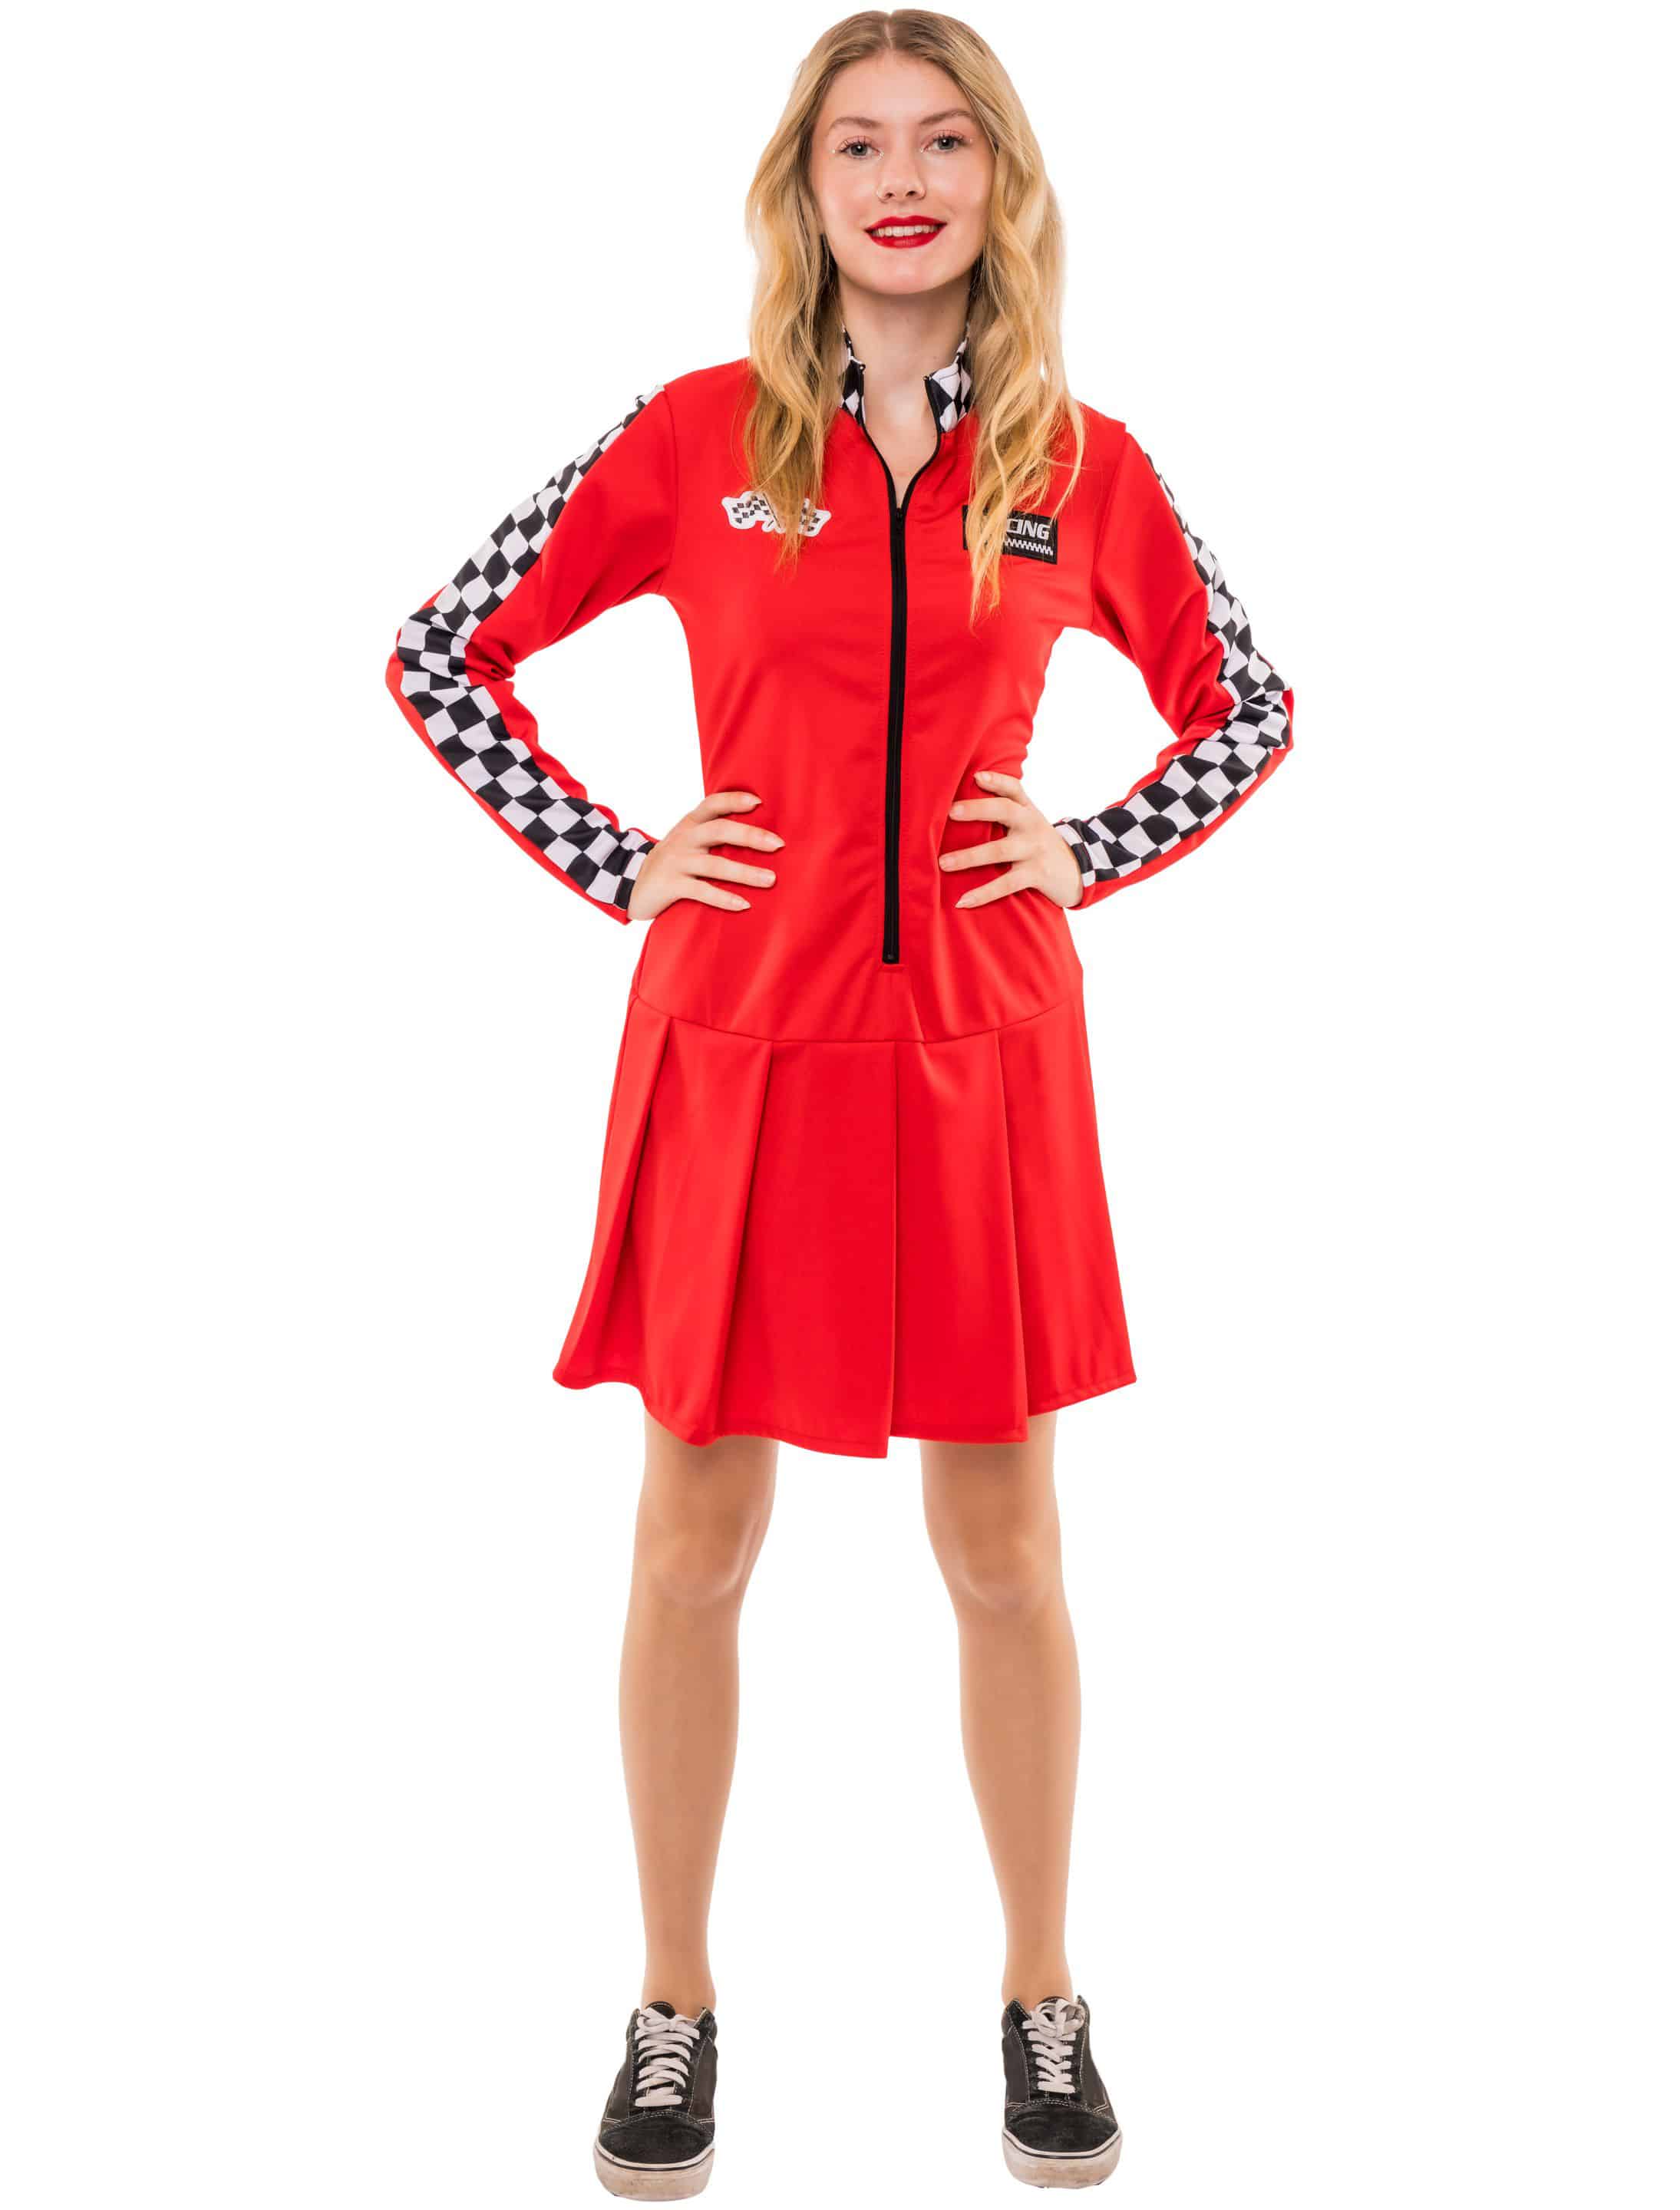 Kleid Rennfahrerin Damen schwarz/weiß/rot S/M